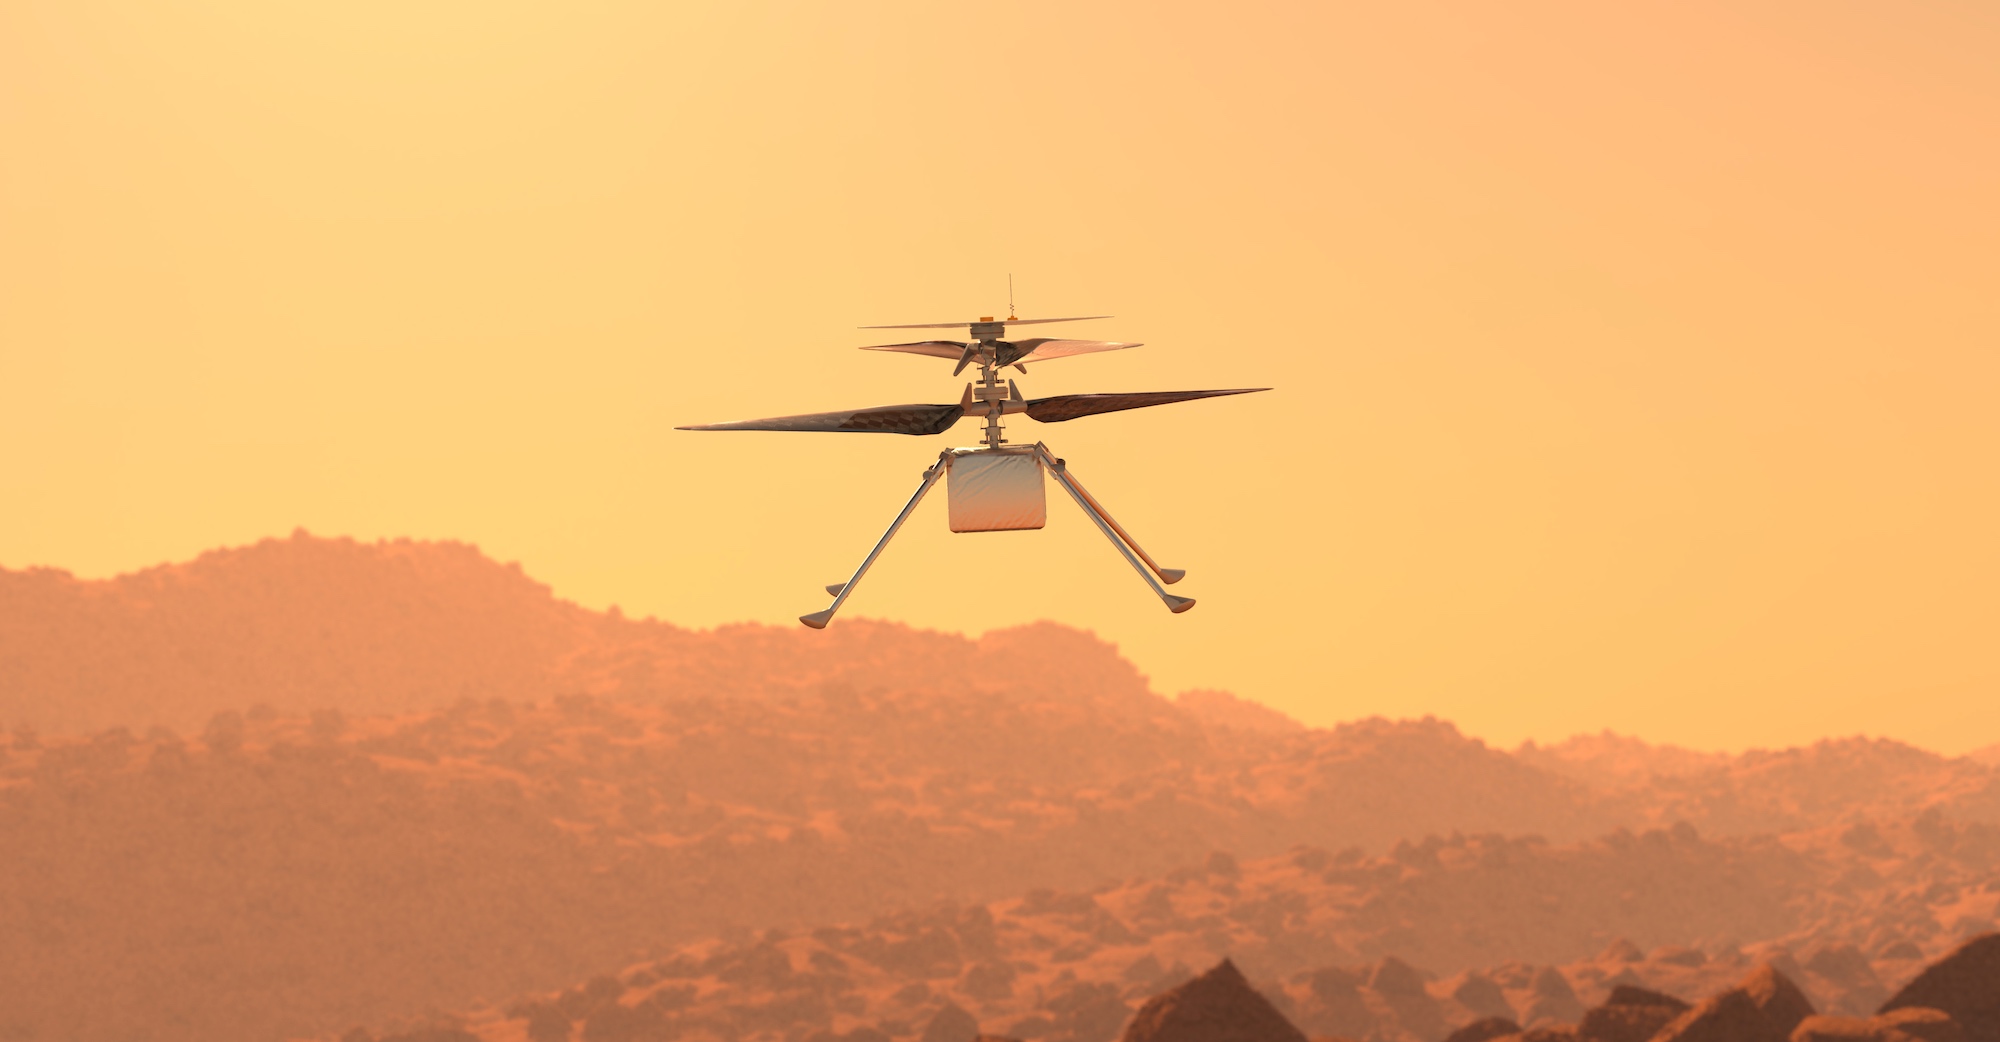 Pendant presque trois ans, l’hélicoptère Ingenuity a accompagné le rover Perseverance dans sa mission sur Mars. Mais c’est désormais fini. © Giovanni Cancemi, Adobe Stock